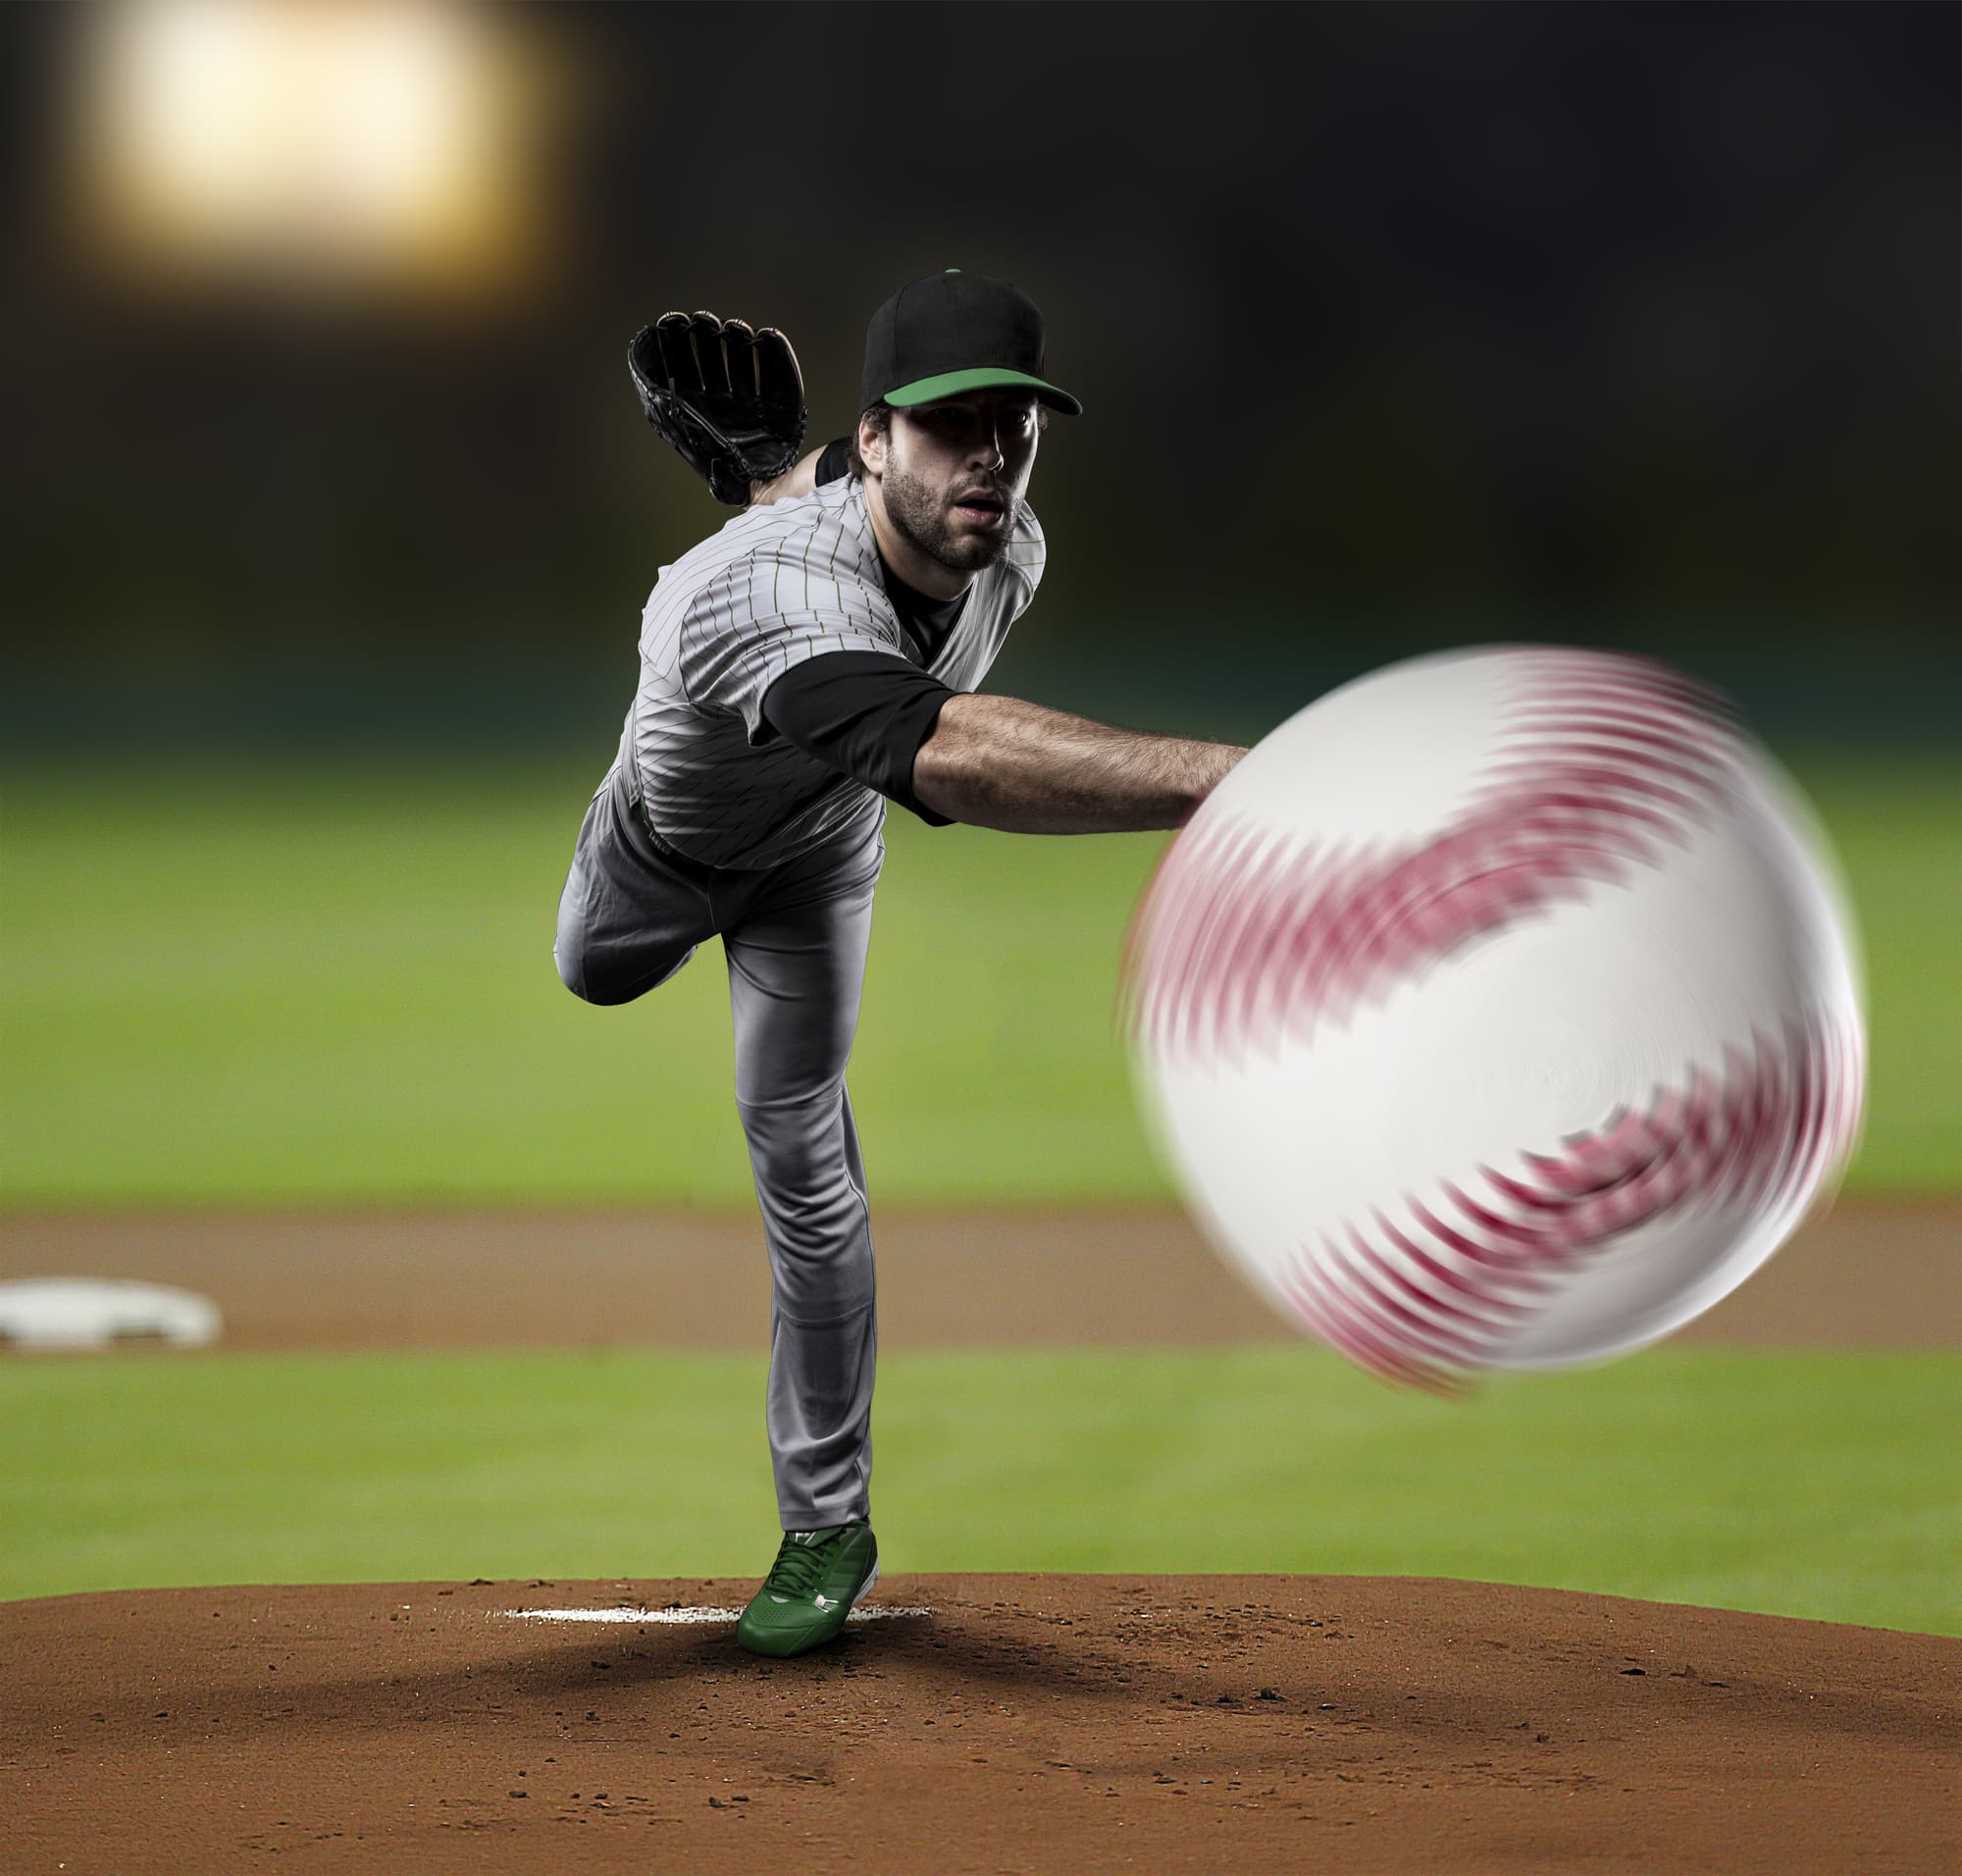 Кидает влево. Бросать мяч. Бейсболист кидает мяч. Человек бросает мяч. Бросок бейсбольного мяча.